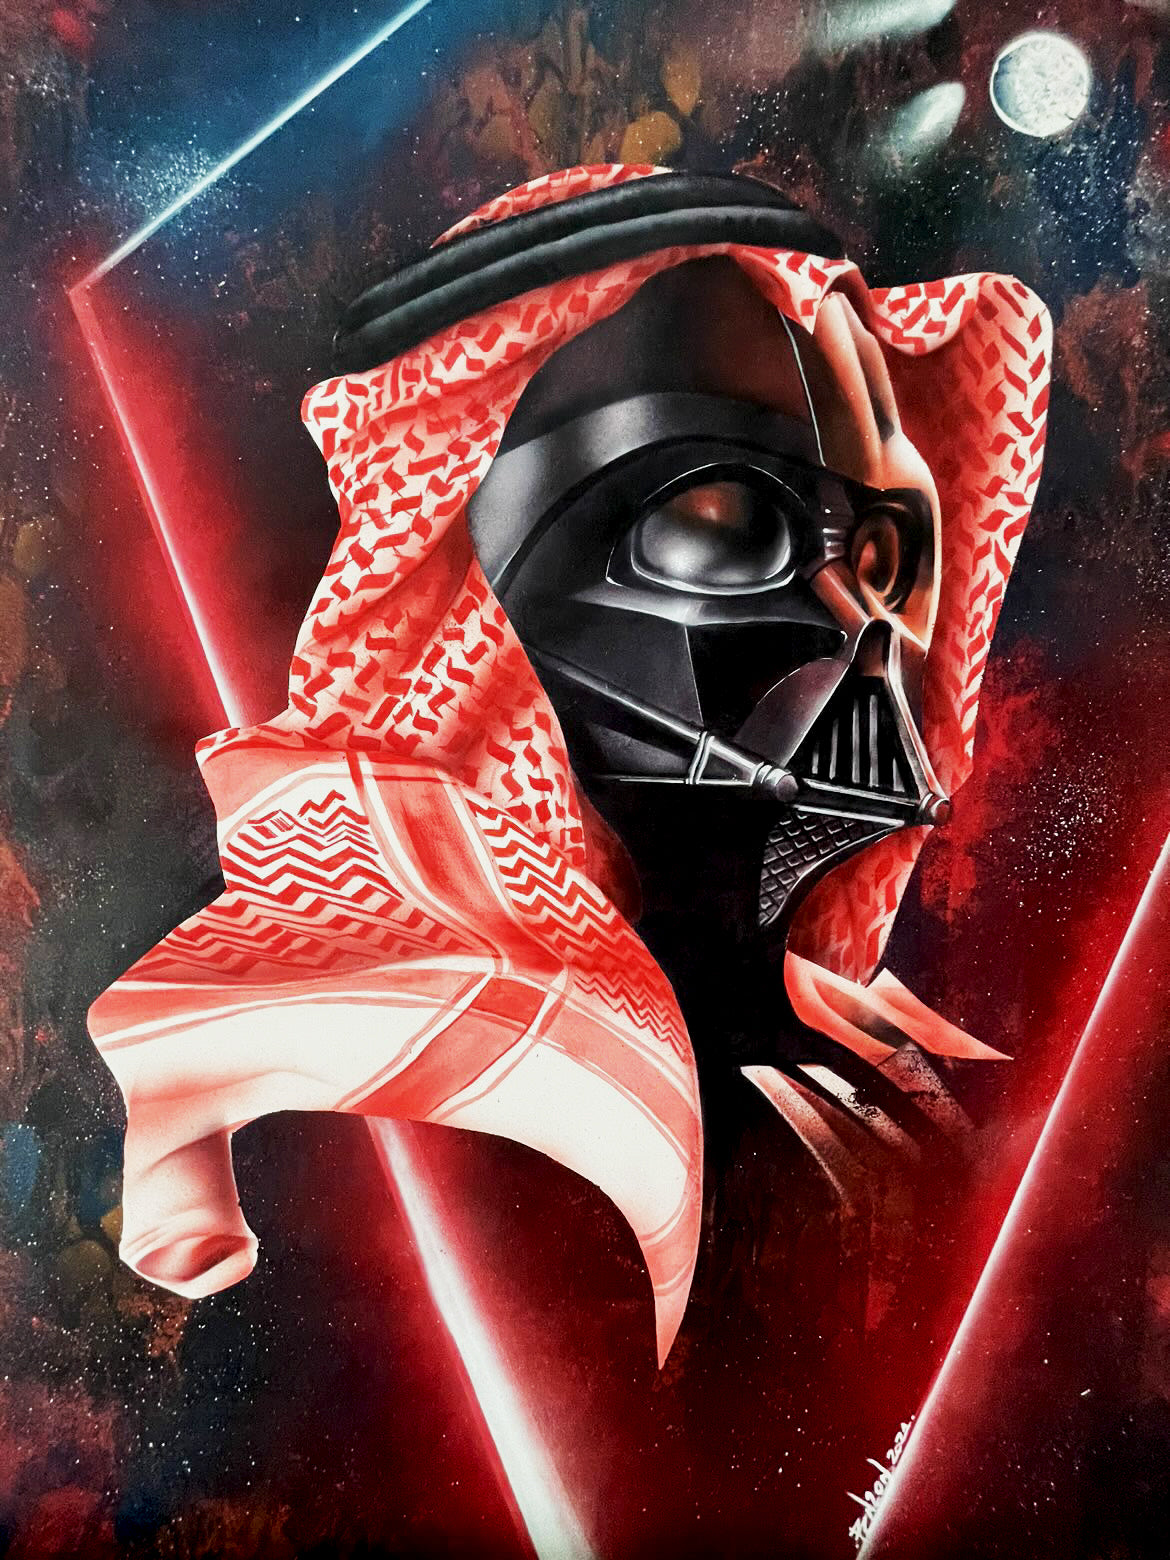 dArab Vader